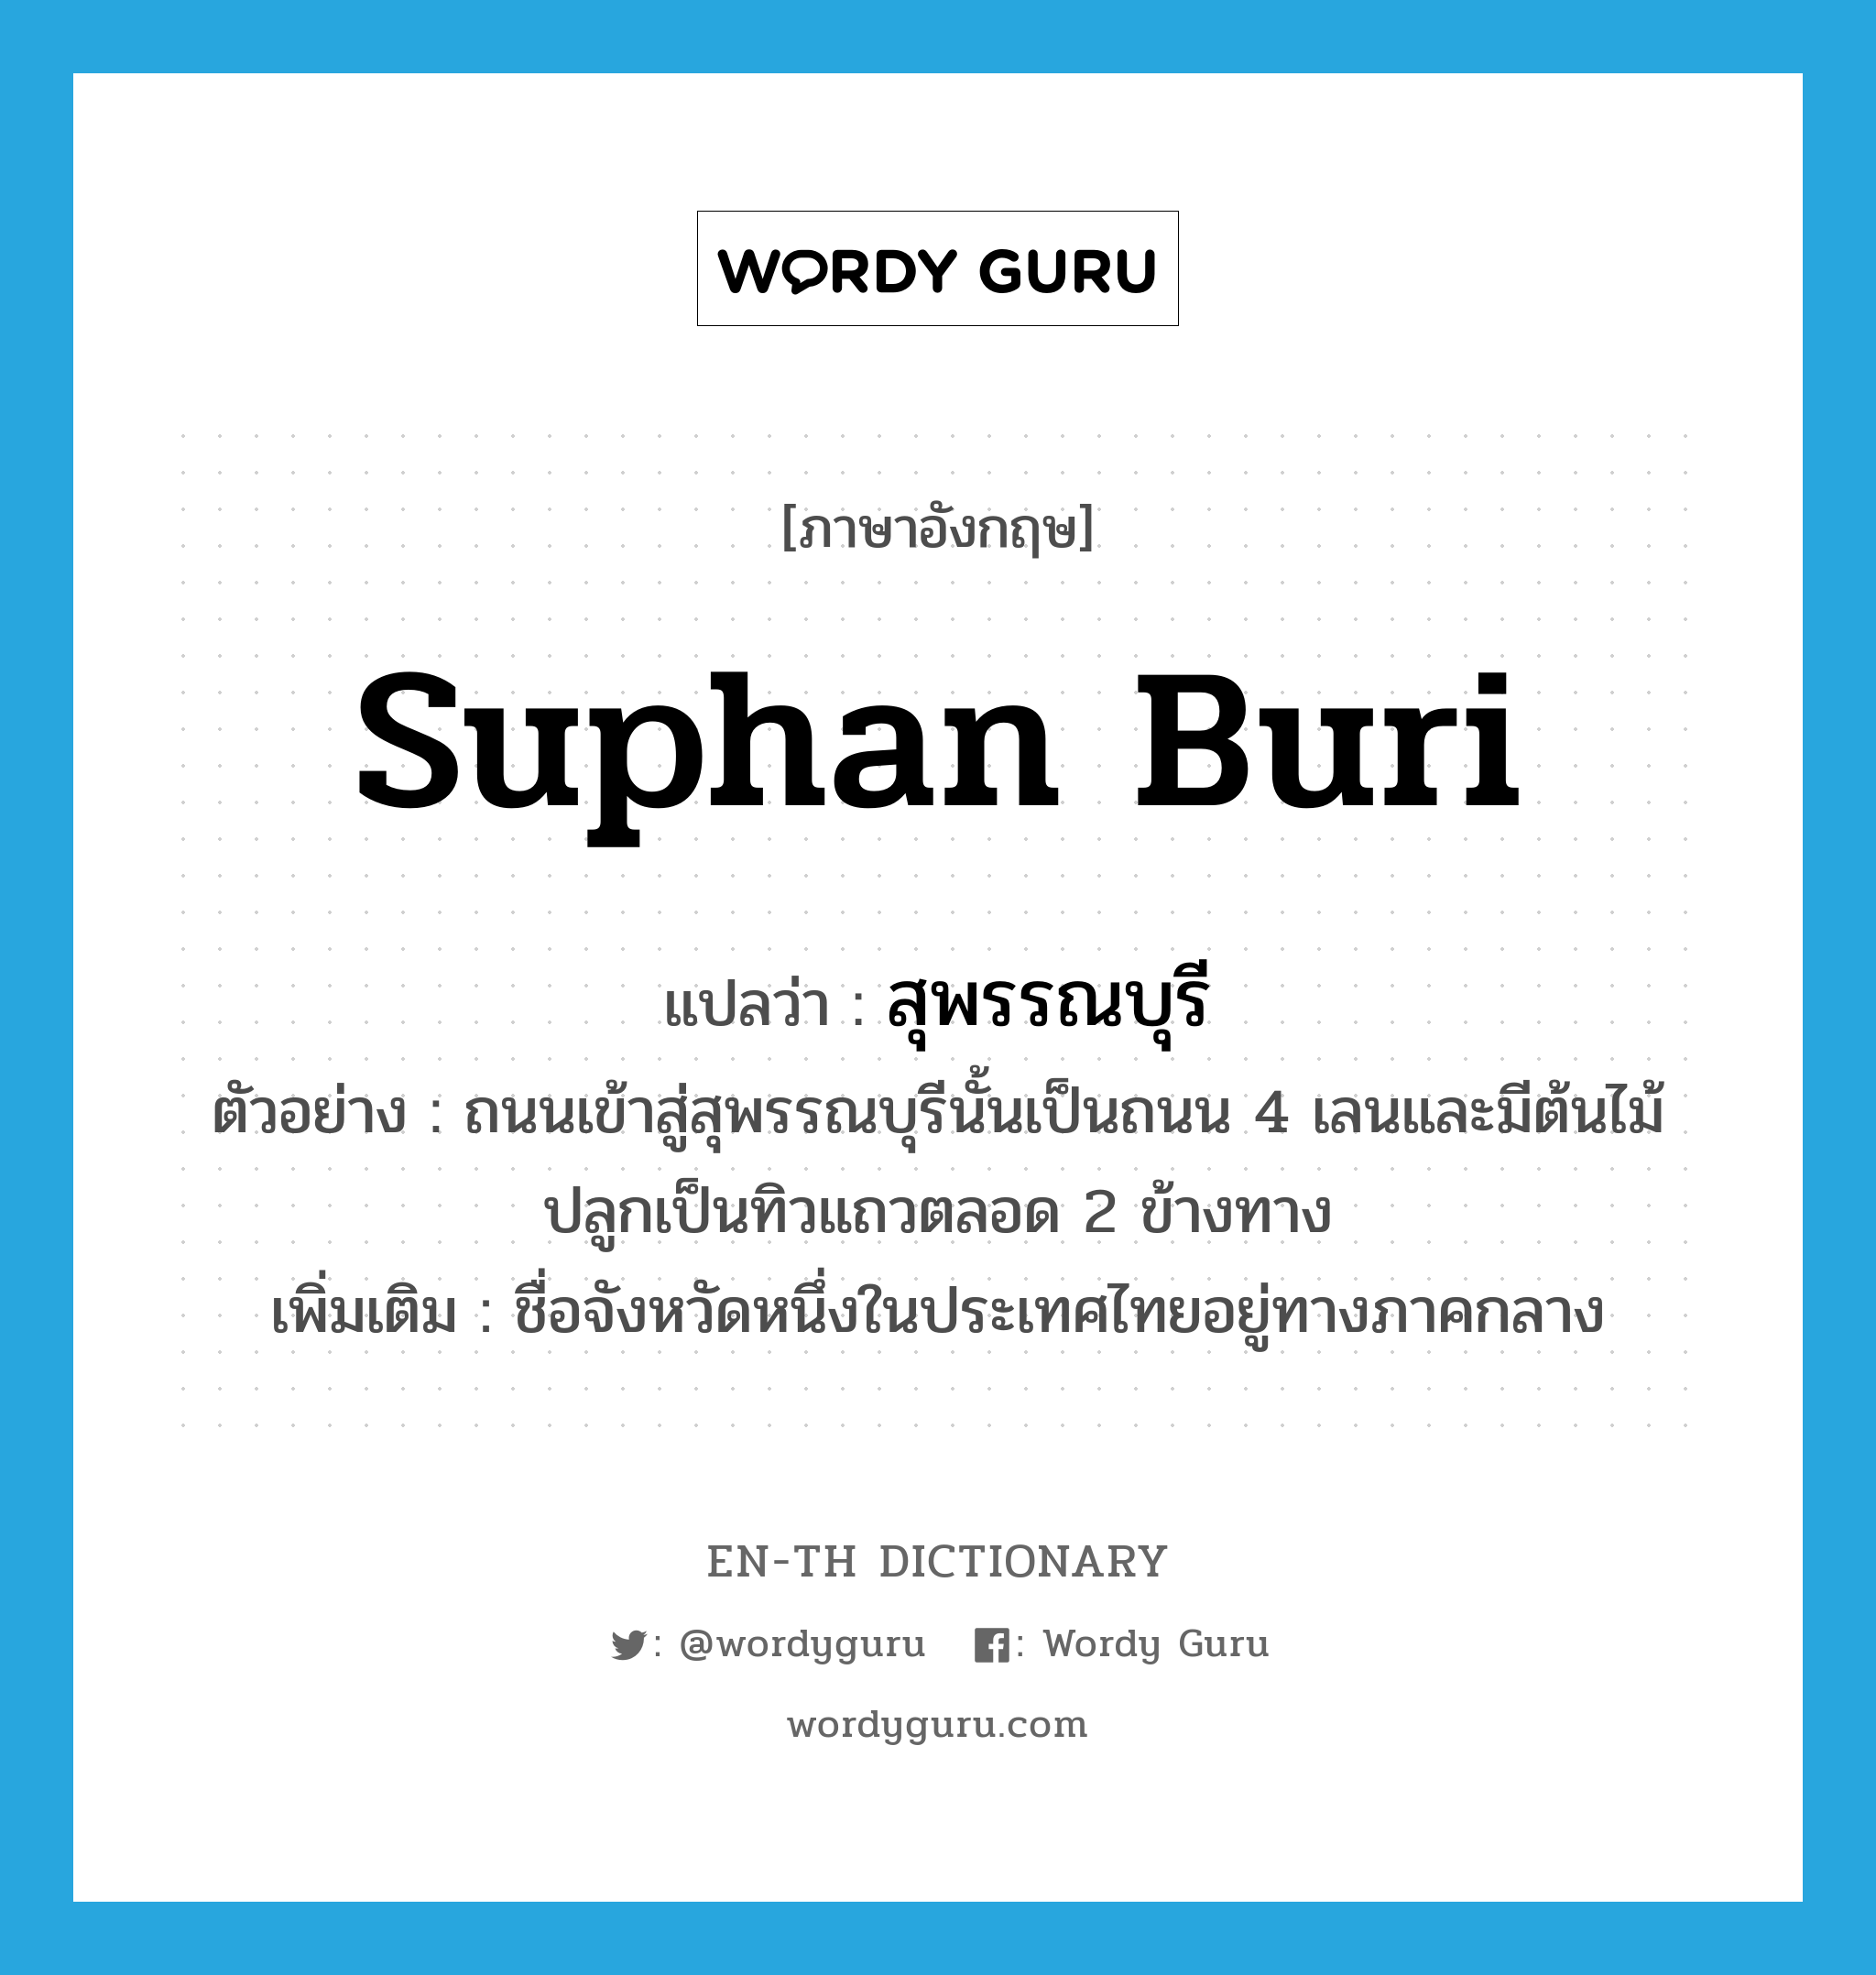 Suphan Buri แปลว่า?, คำศัพท์ภาษาอังกฤษ Suphan Buri แปลว่า สุพรรณบุรี ประเภท N ตัวอย่าง ถนนเข้าสู่สุพรรณบุรีนั้นเป็นถนน 4 เลนและมีต้นไม้ปลูกเป็นทิวแถวตลอด 2 ข้างทาง เพิ่มเติม ชื่อจังหวัดหนึ่งในประเทศไทยอยู่ทางภาคกลาง หมวด N